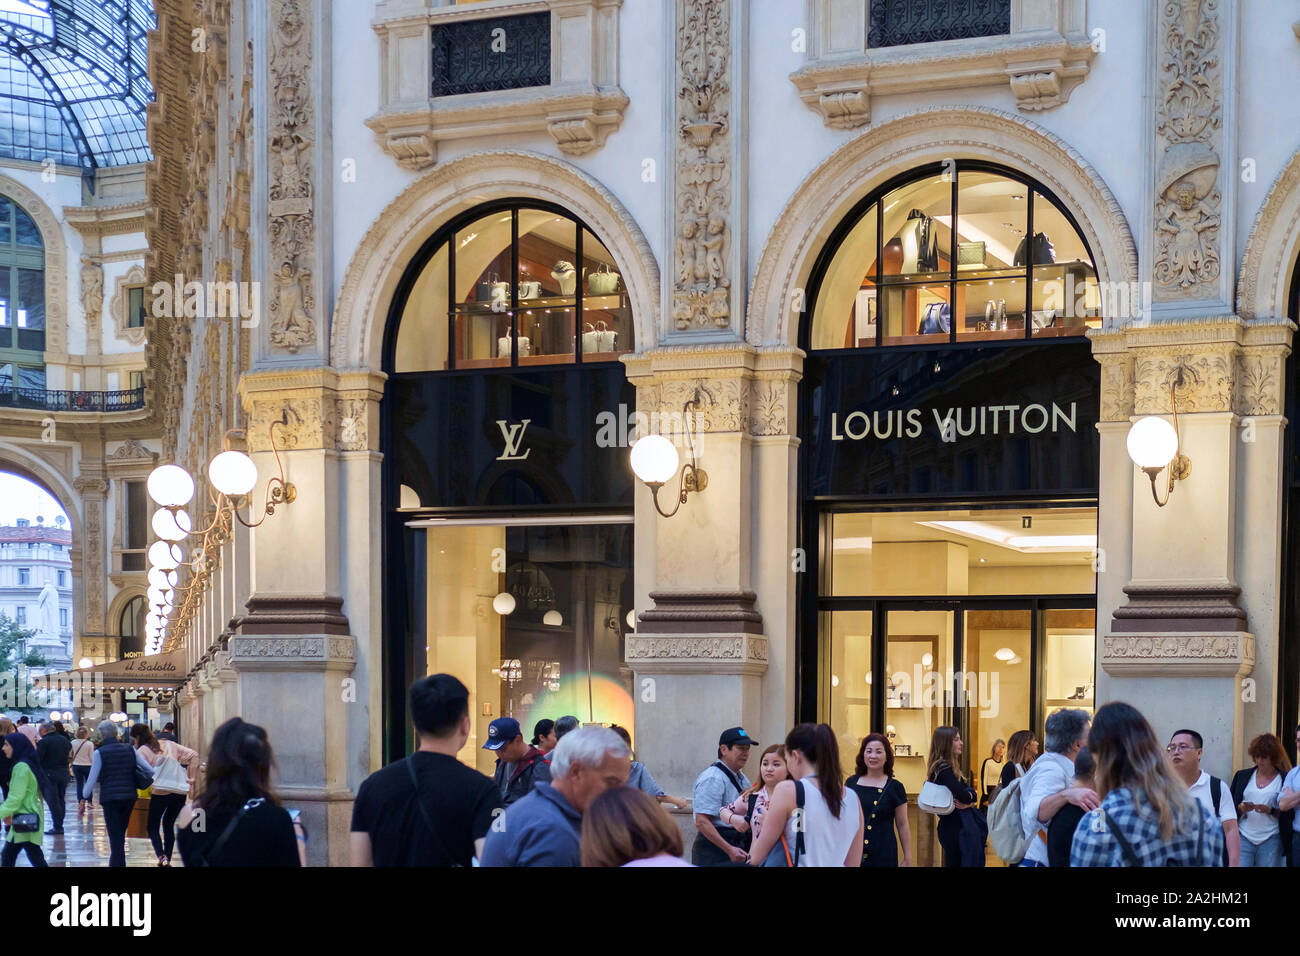 Louis Vuitton Illinois Stores